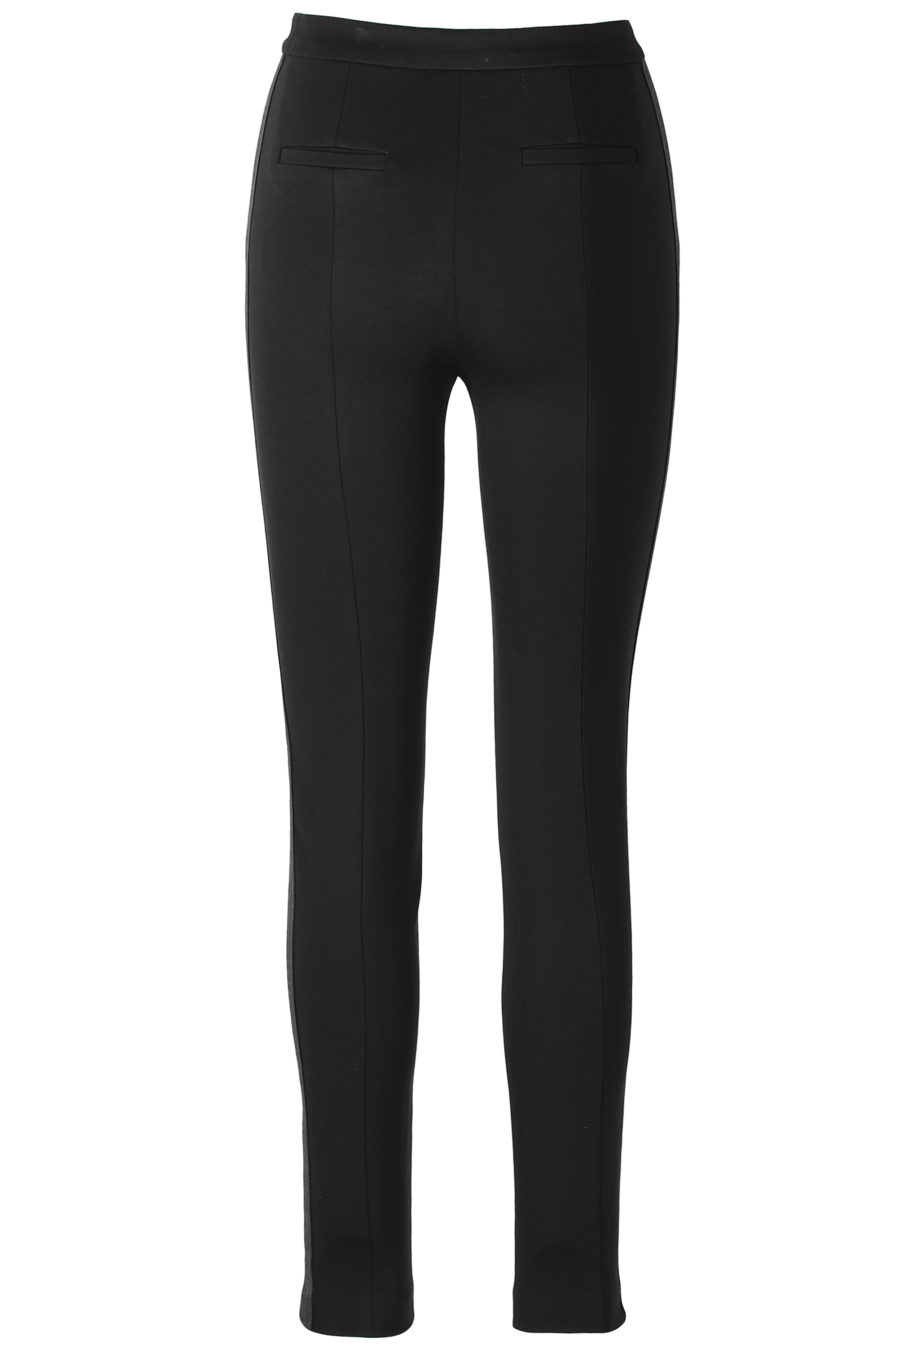 Pantalones negros ajustados con cinta logotipo - IMG 3197